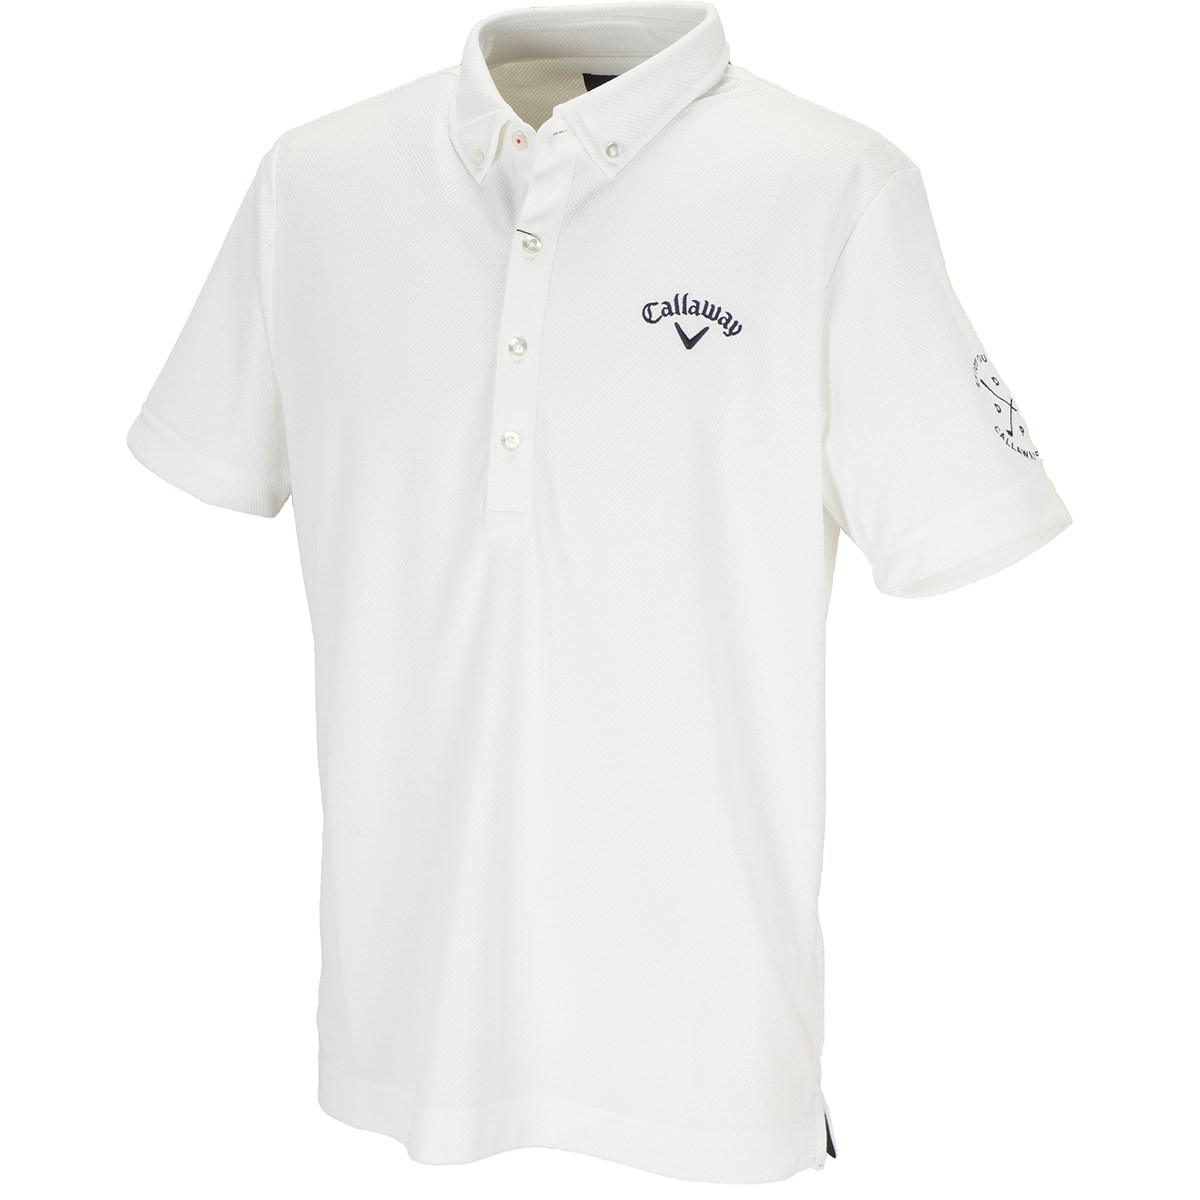 キャロウェイゴルフ(Callaway Golf) アロマダイヤ 鹿の子共襟ボタンダウン半袖ポロシャツ 